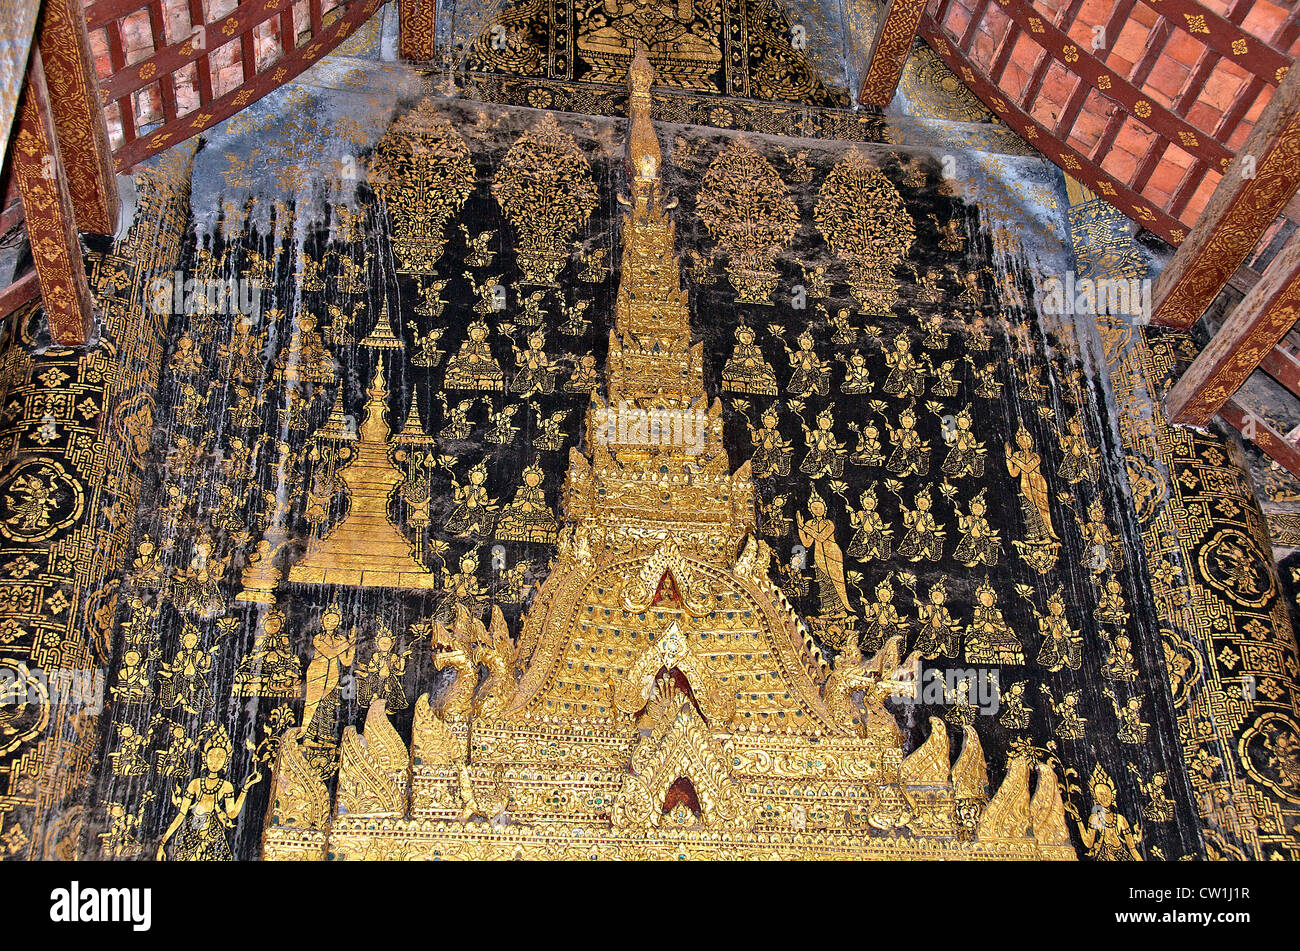 Vat Xieng Thong temple, Luang Prabang, Laos Stock Photo